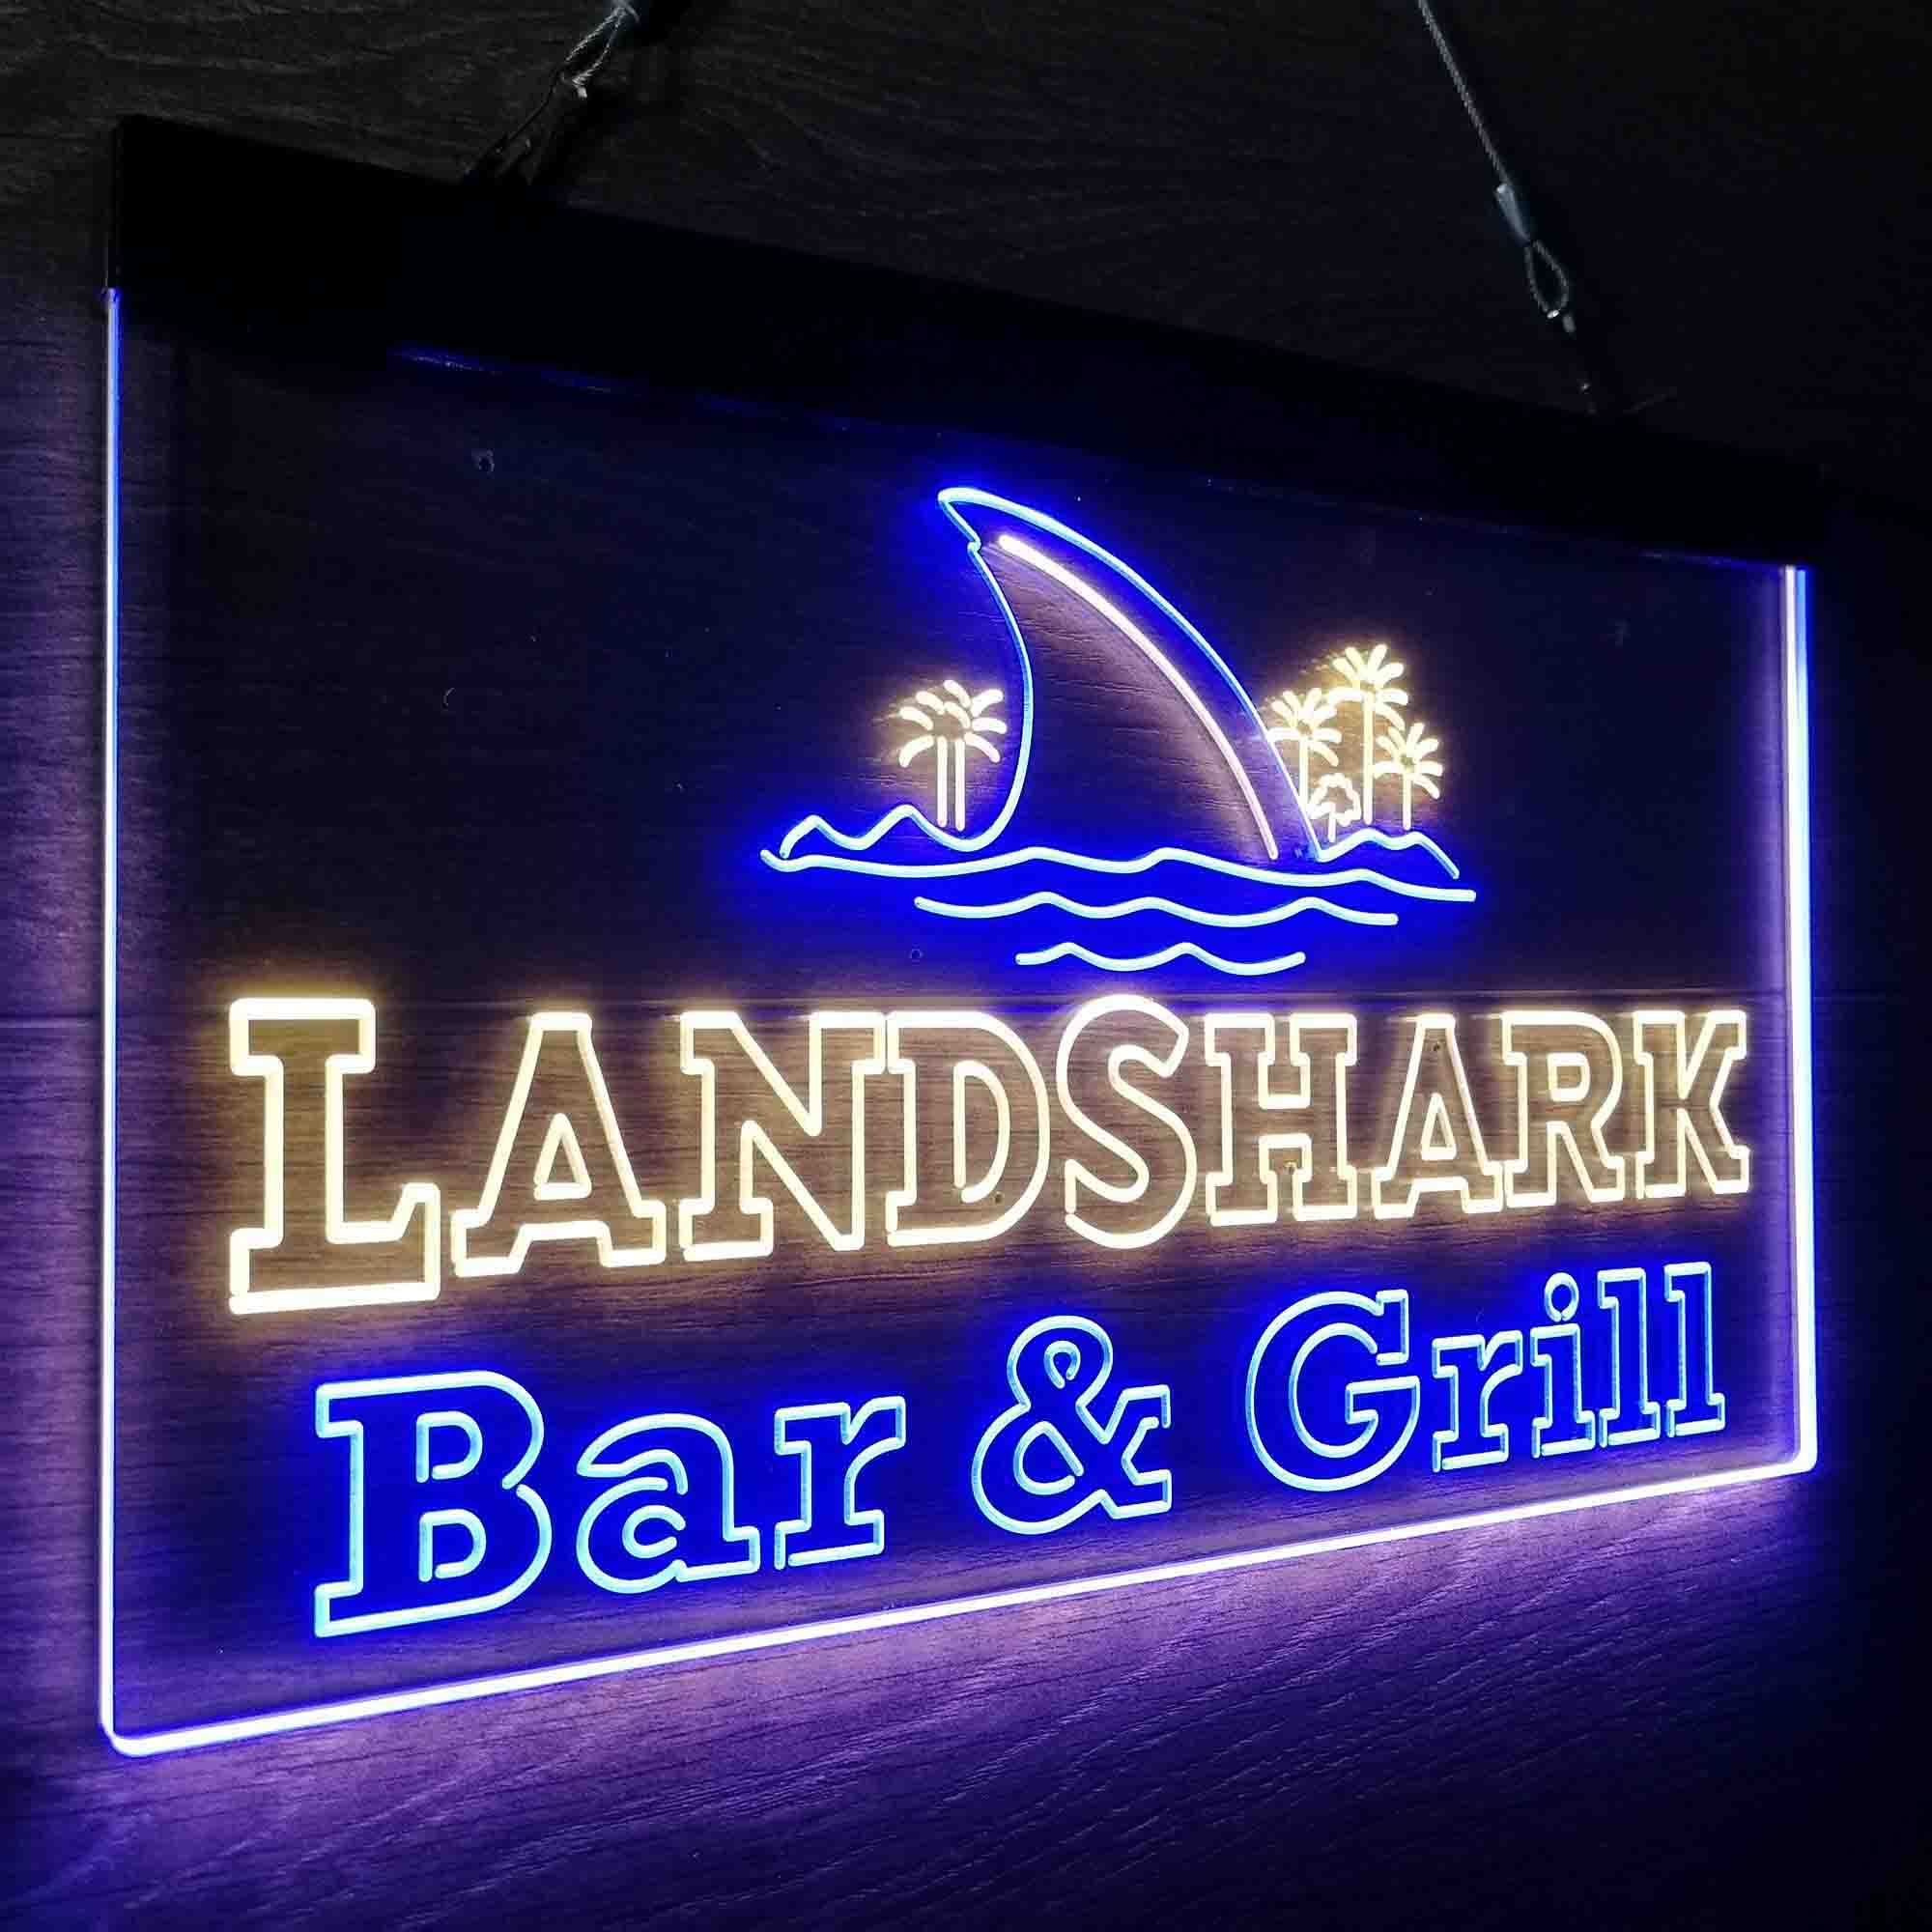 Landshark Bar & Grill Beer Neon-Like LED Sign